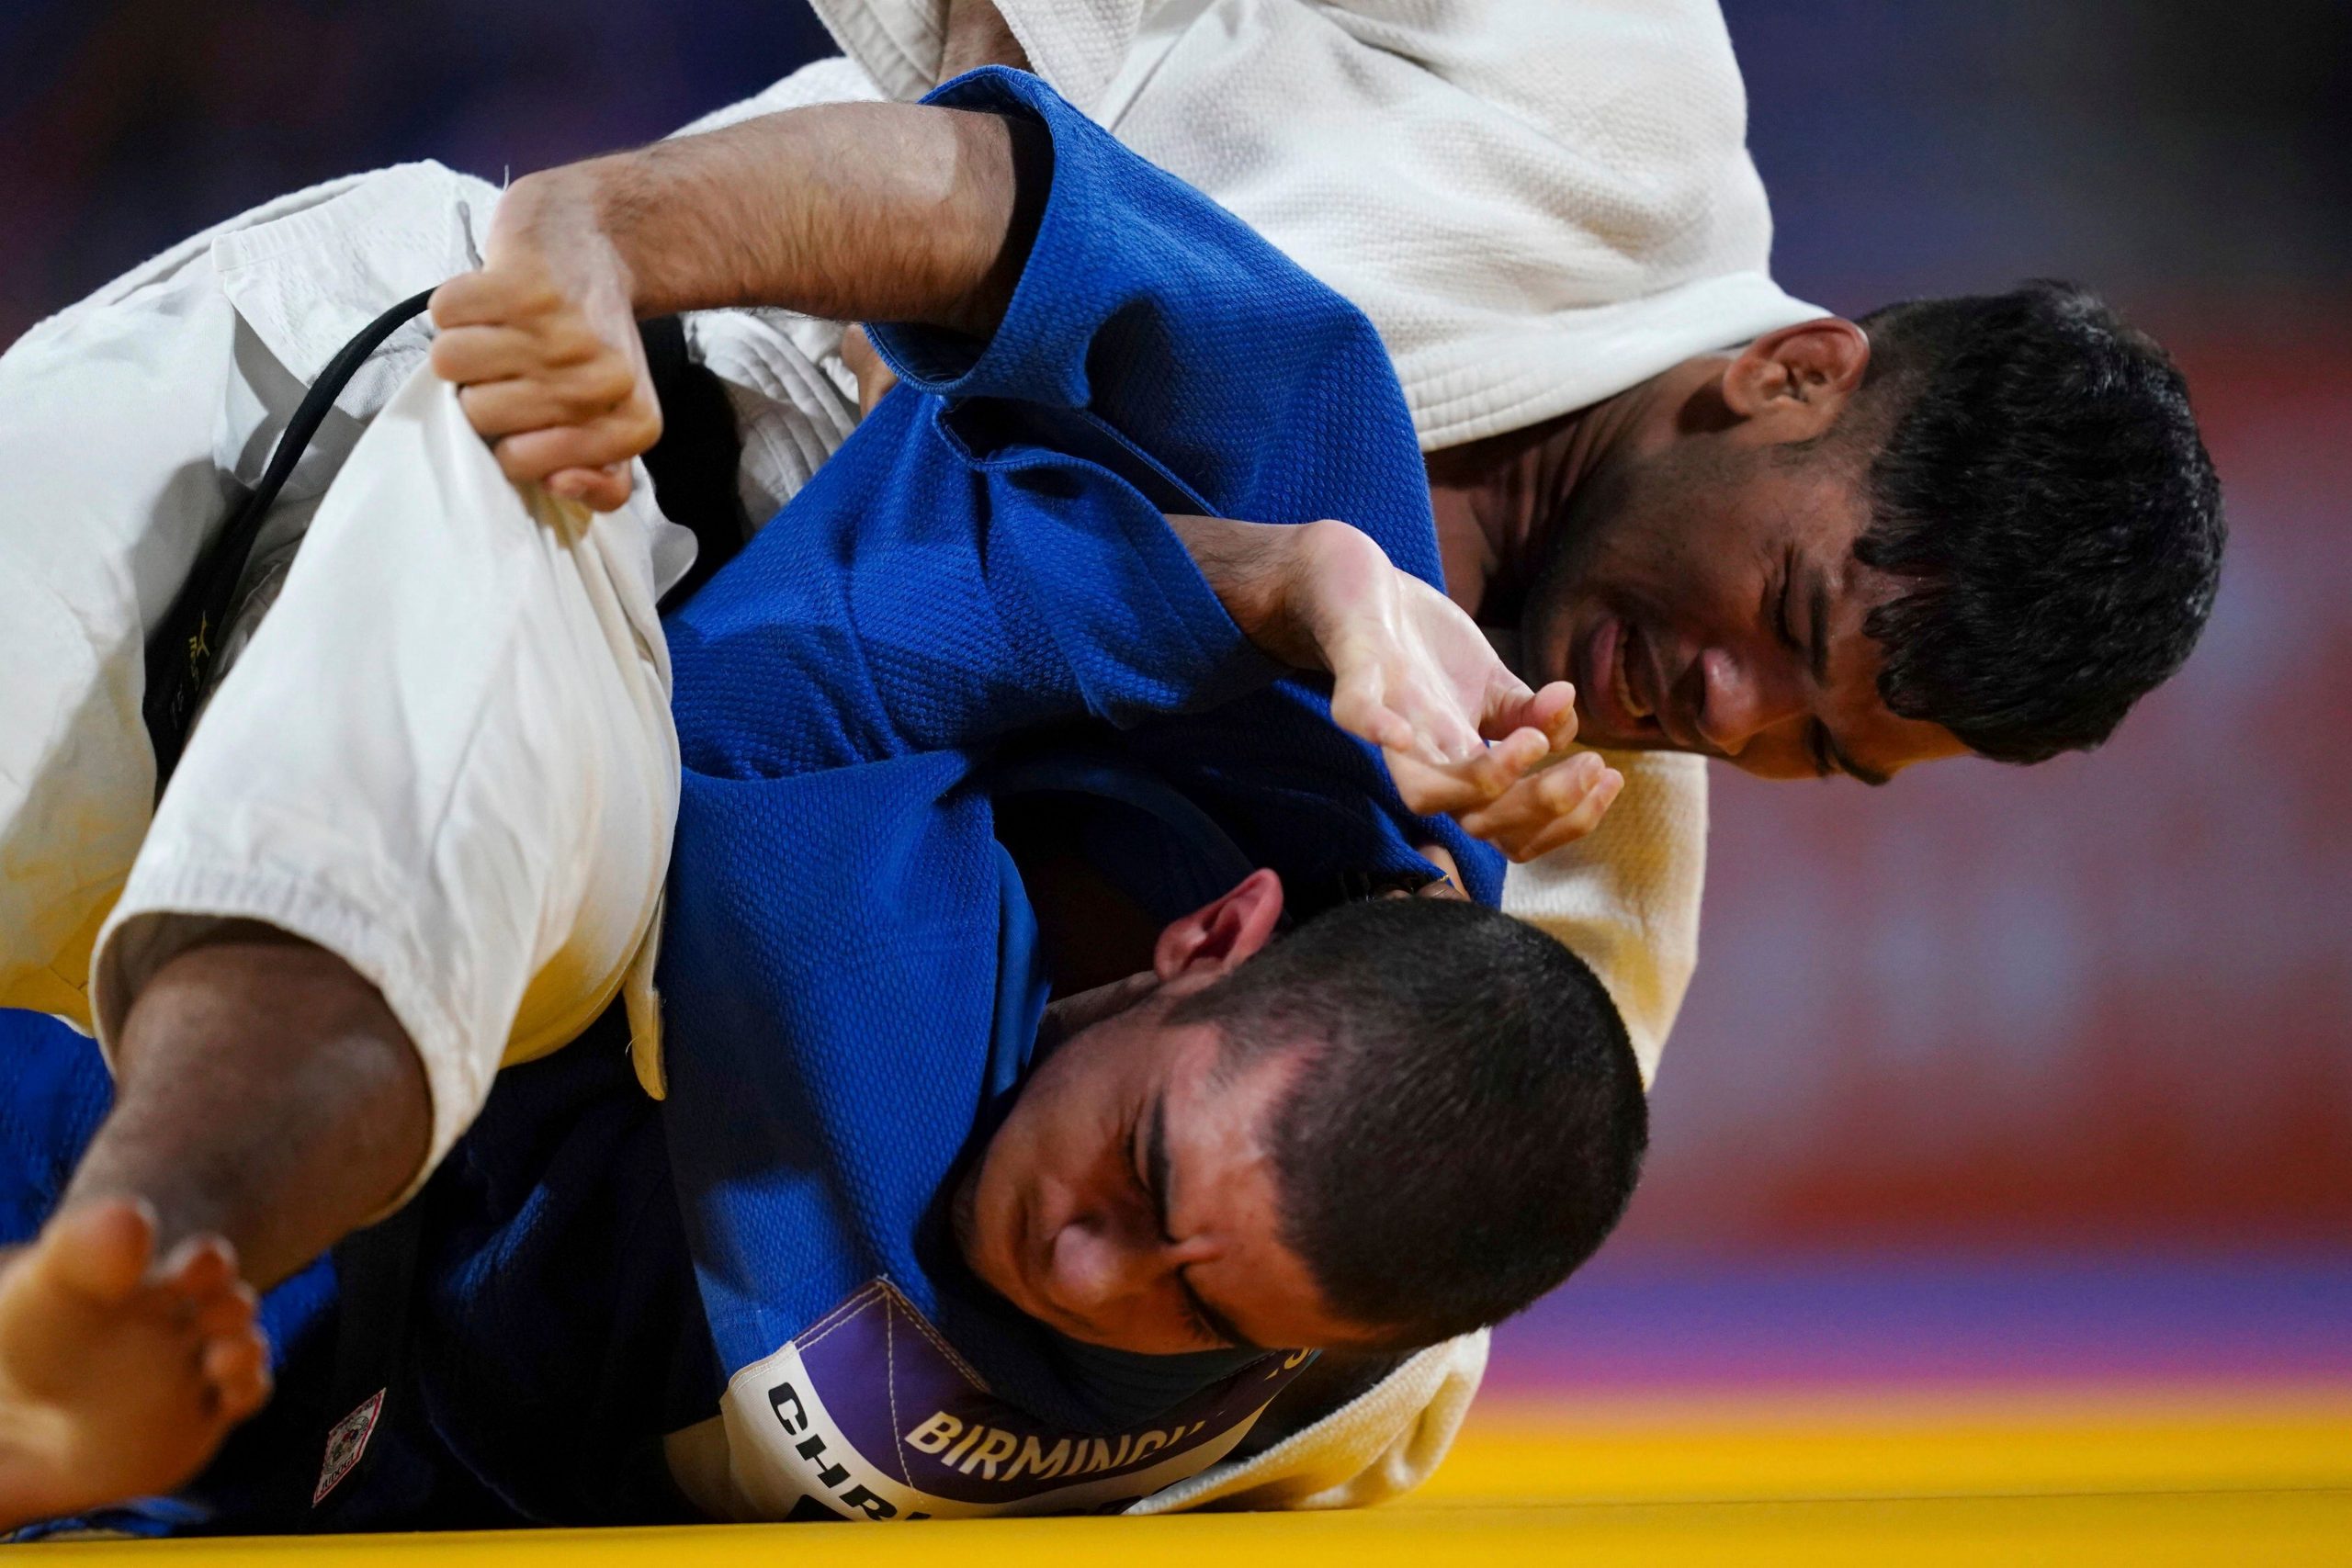 CWG 2022: India’s Vijay Kumar Yadav wins bronze in men’s 60kg judo